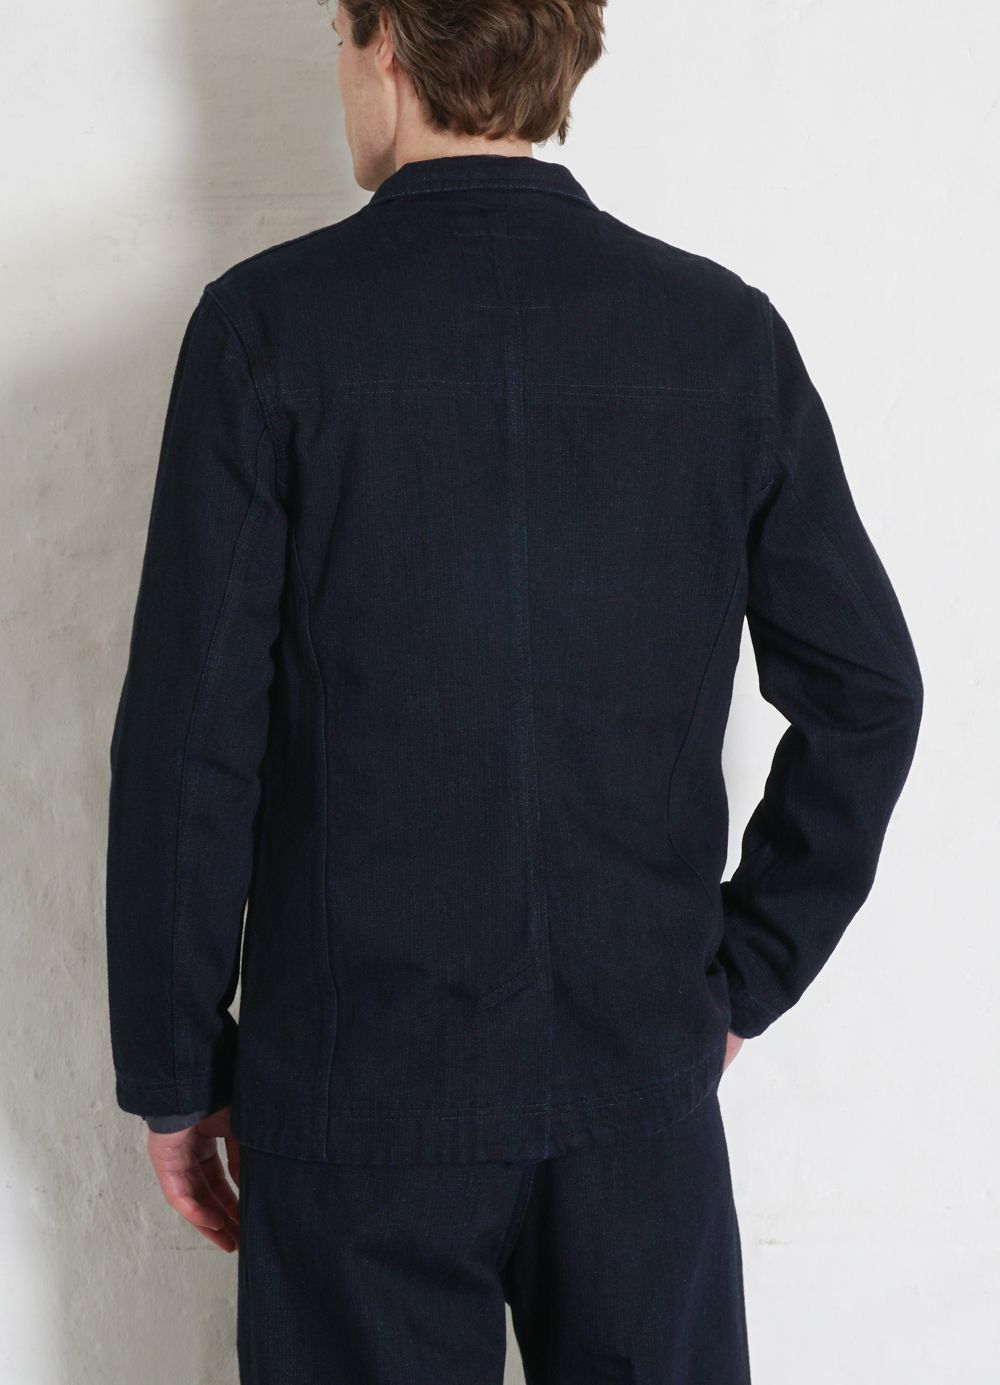 HANSEN GARMENTS - NICOLAI | Informal 3-button Blazer | Black Indigo - HANSEN Garments